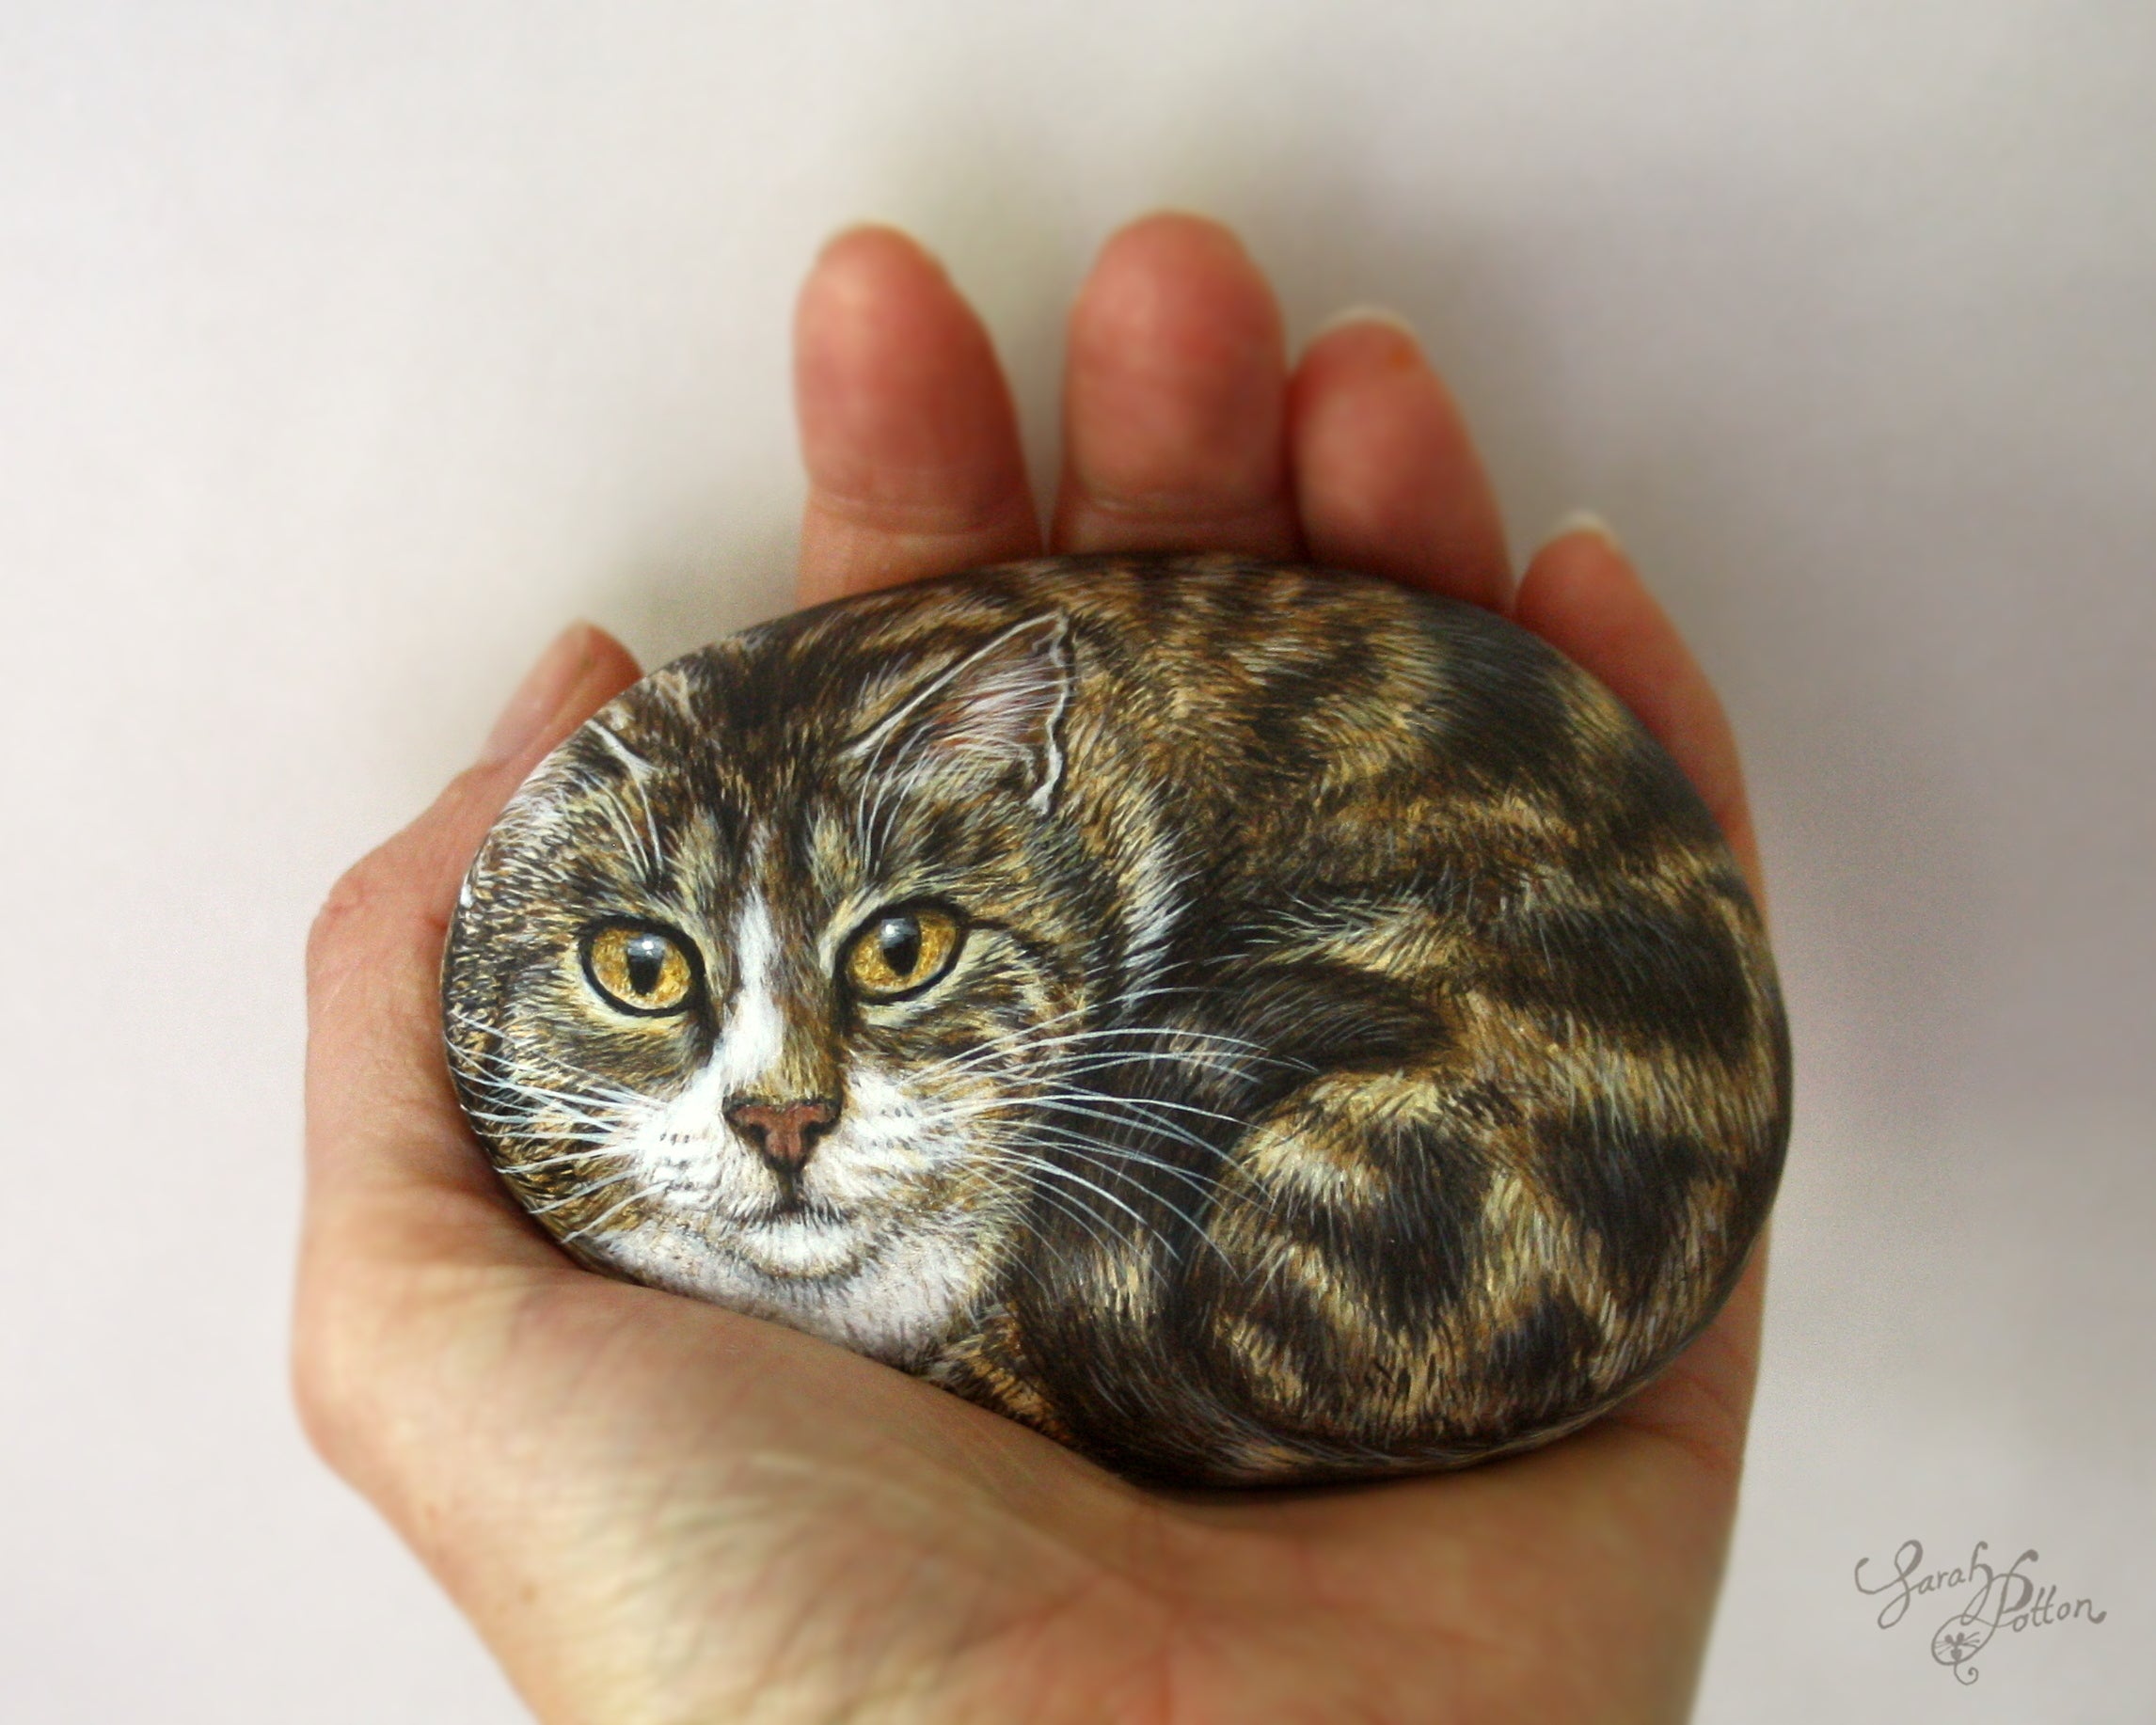 Pet Portrait Art NZ - Cat Loss Painting 